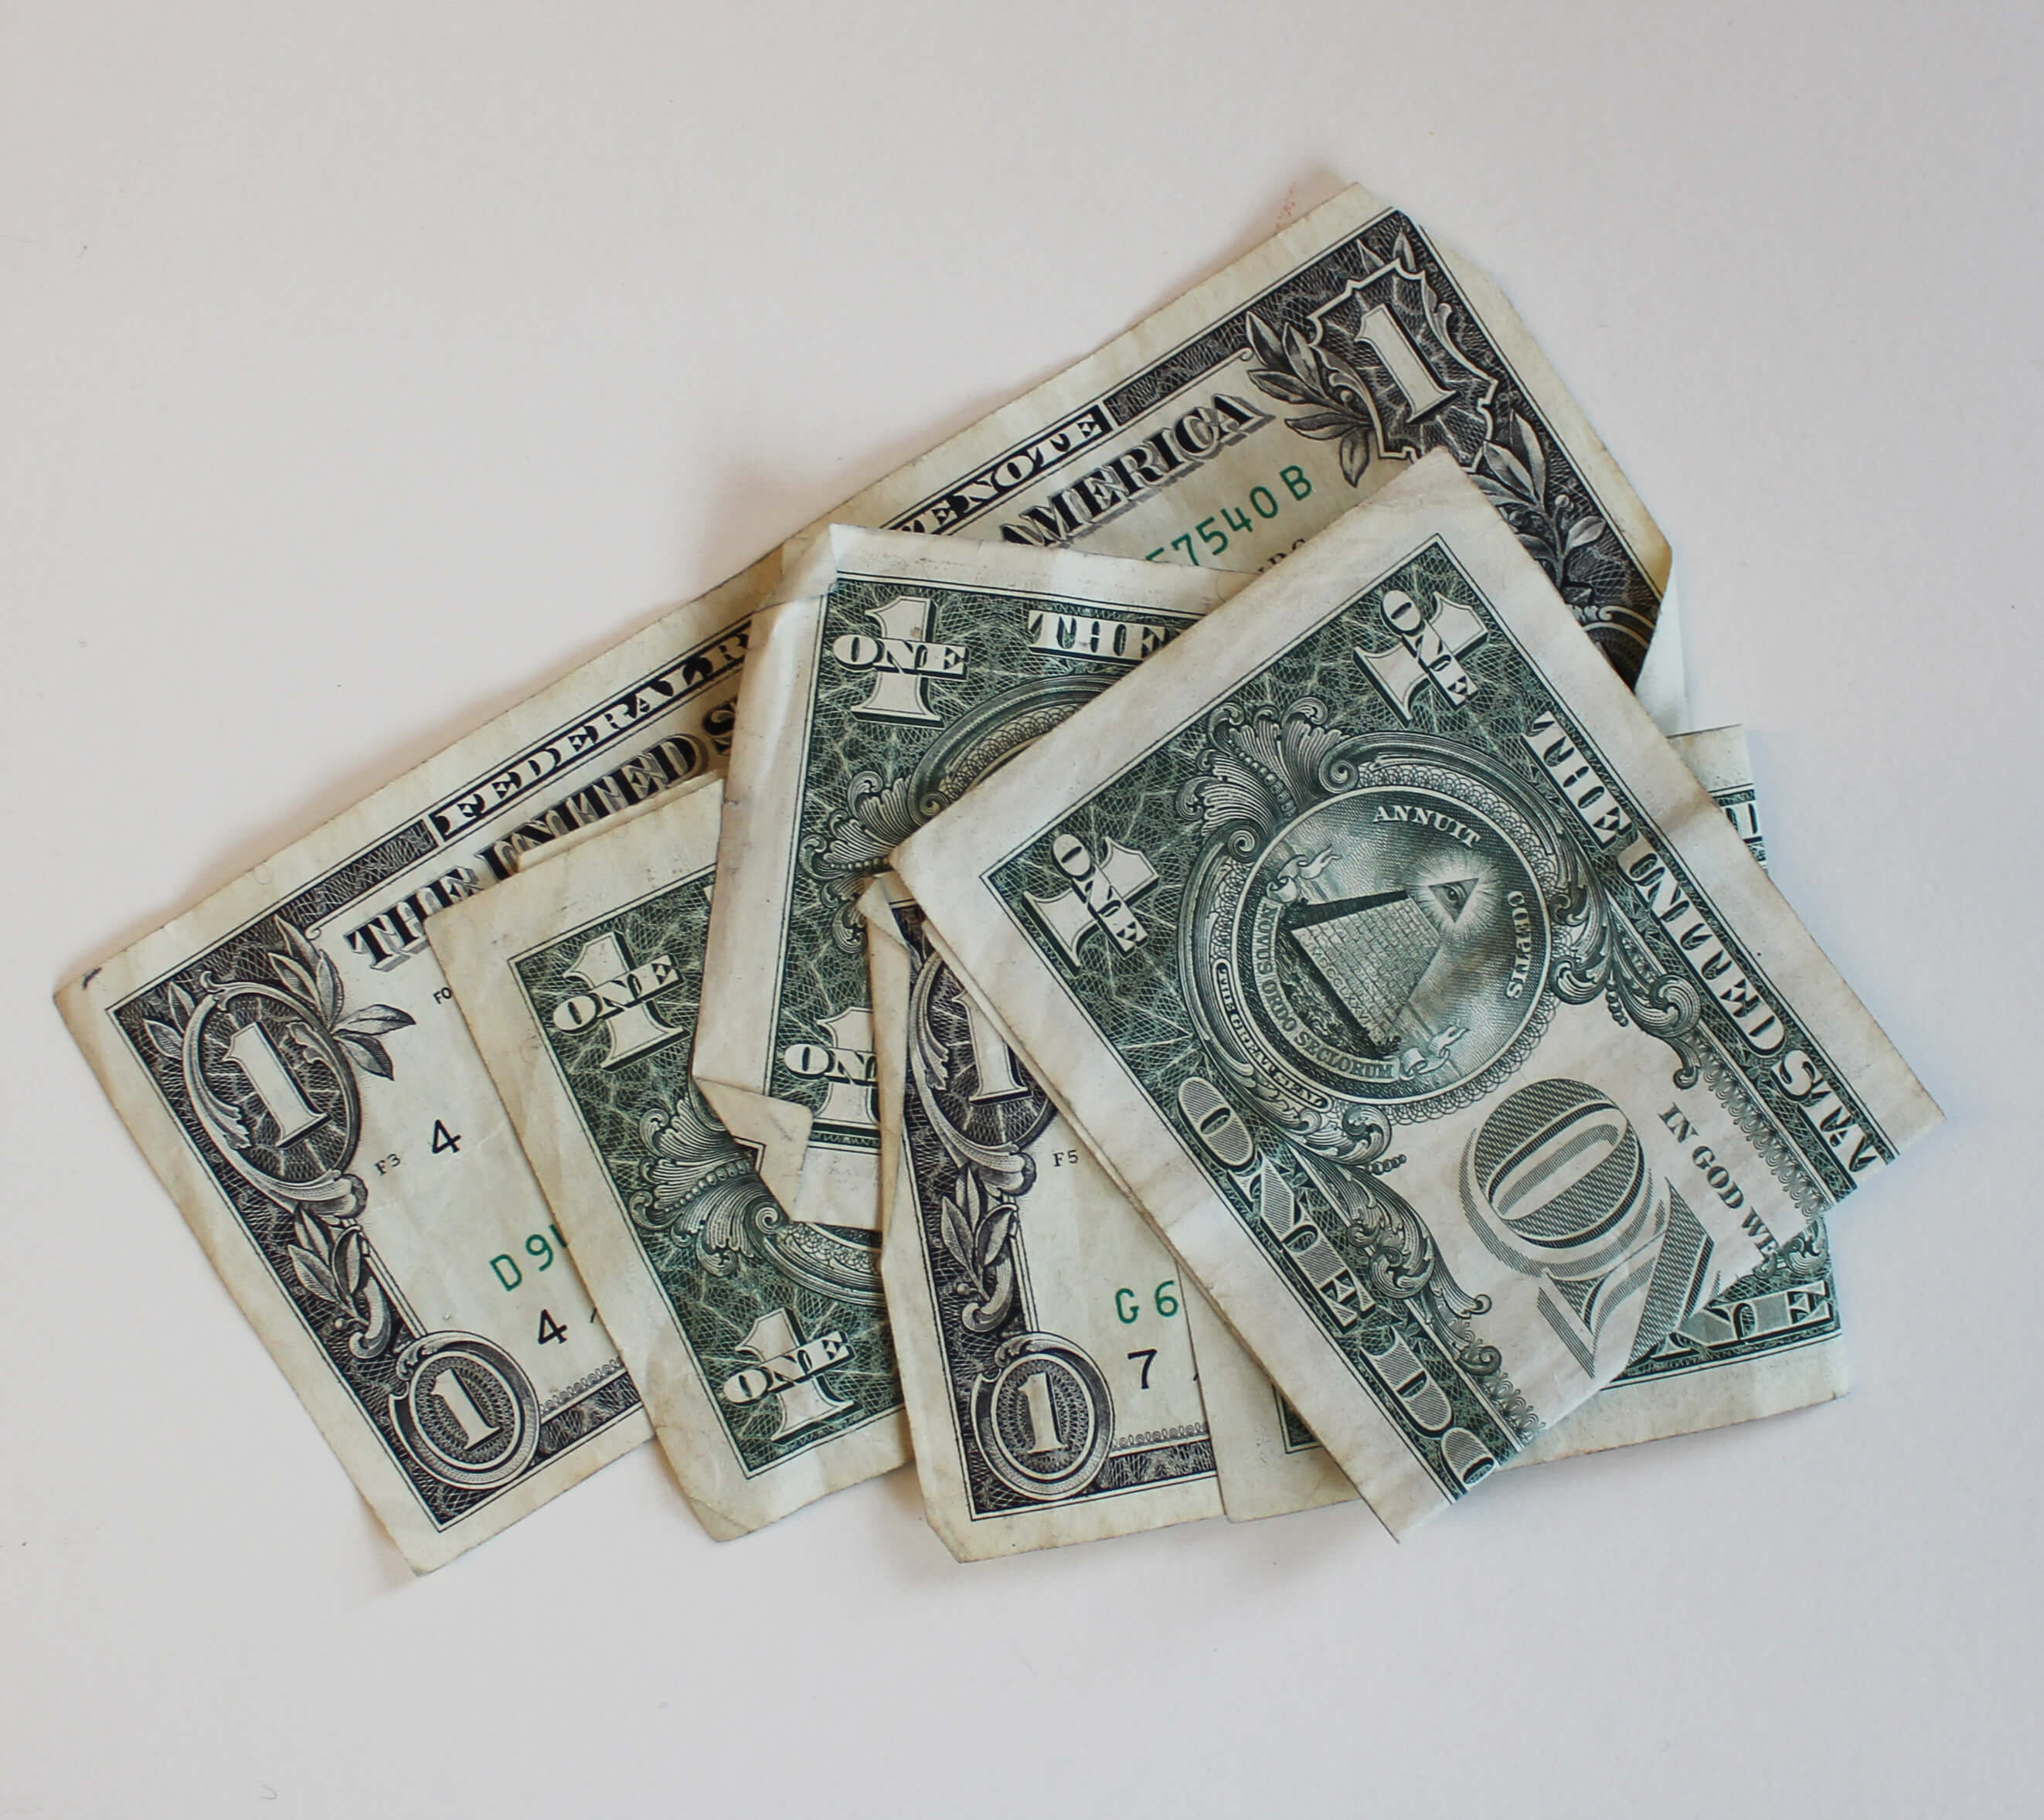 Five U.S. one dollar bills